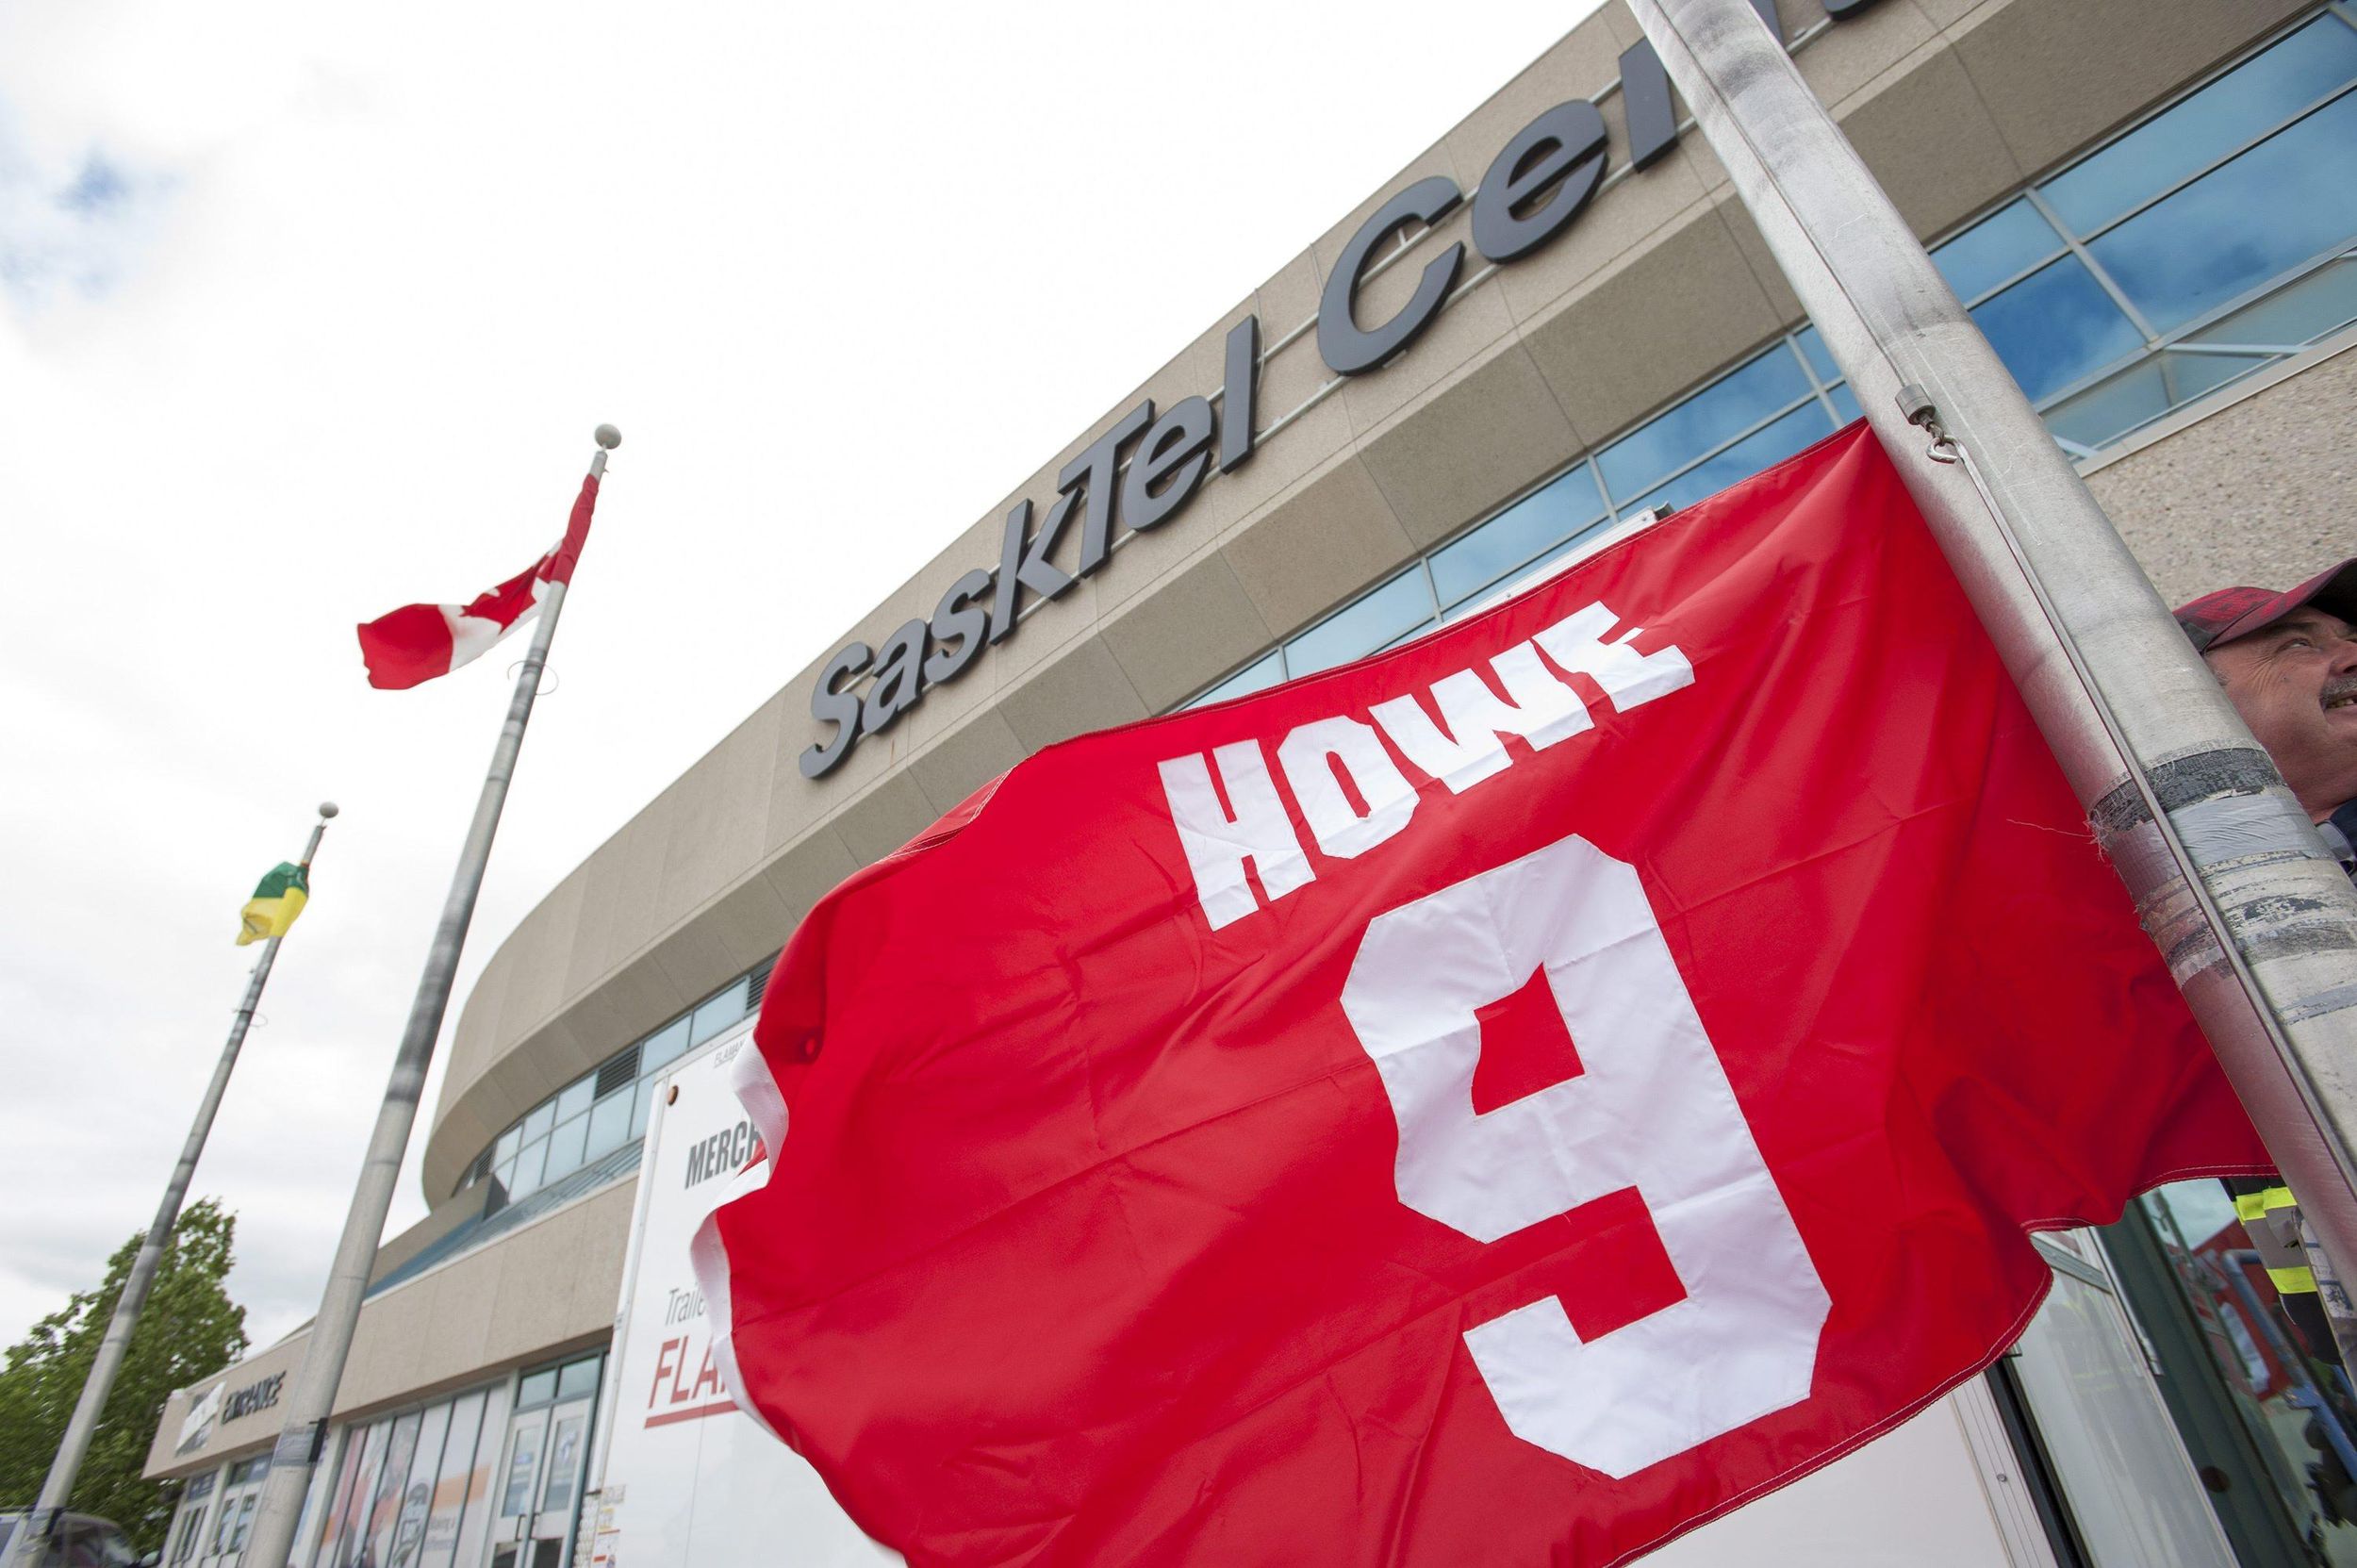 Gordie Howe, ice hockey star – obituary